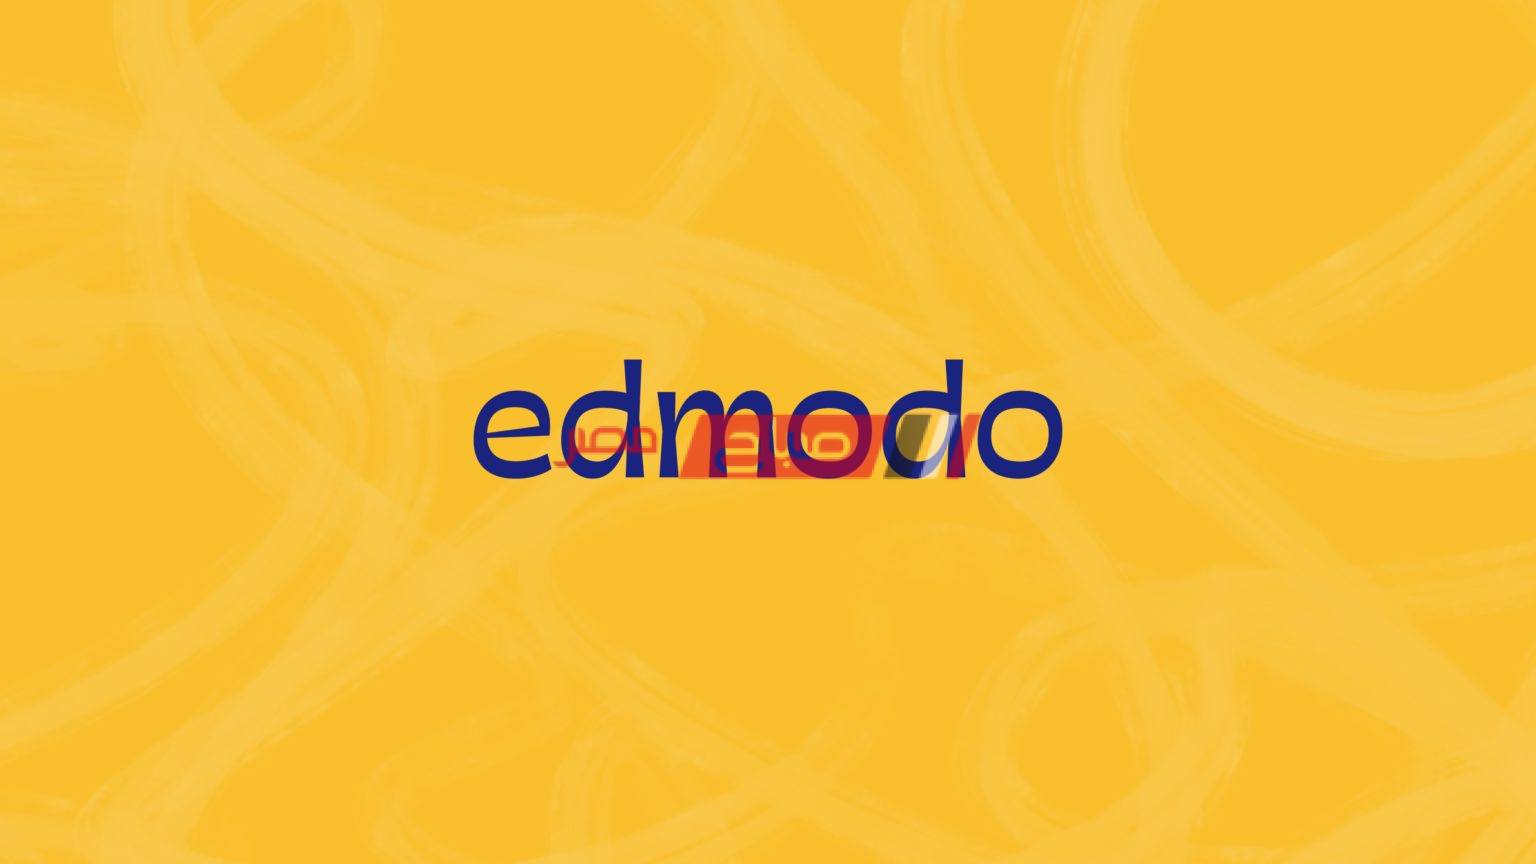 التسجيل على منصة Edmodo التعليمية للحصول على كود الطالب وتقديم الابحاث - موقع صباح مصر